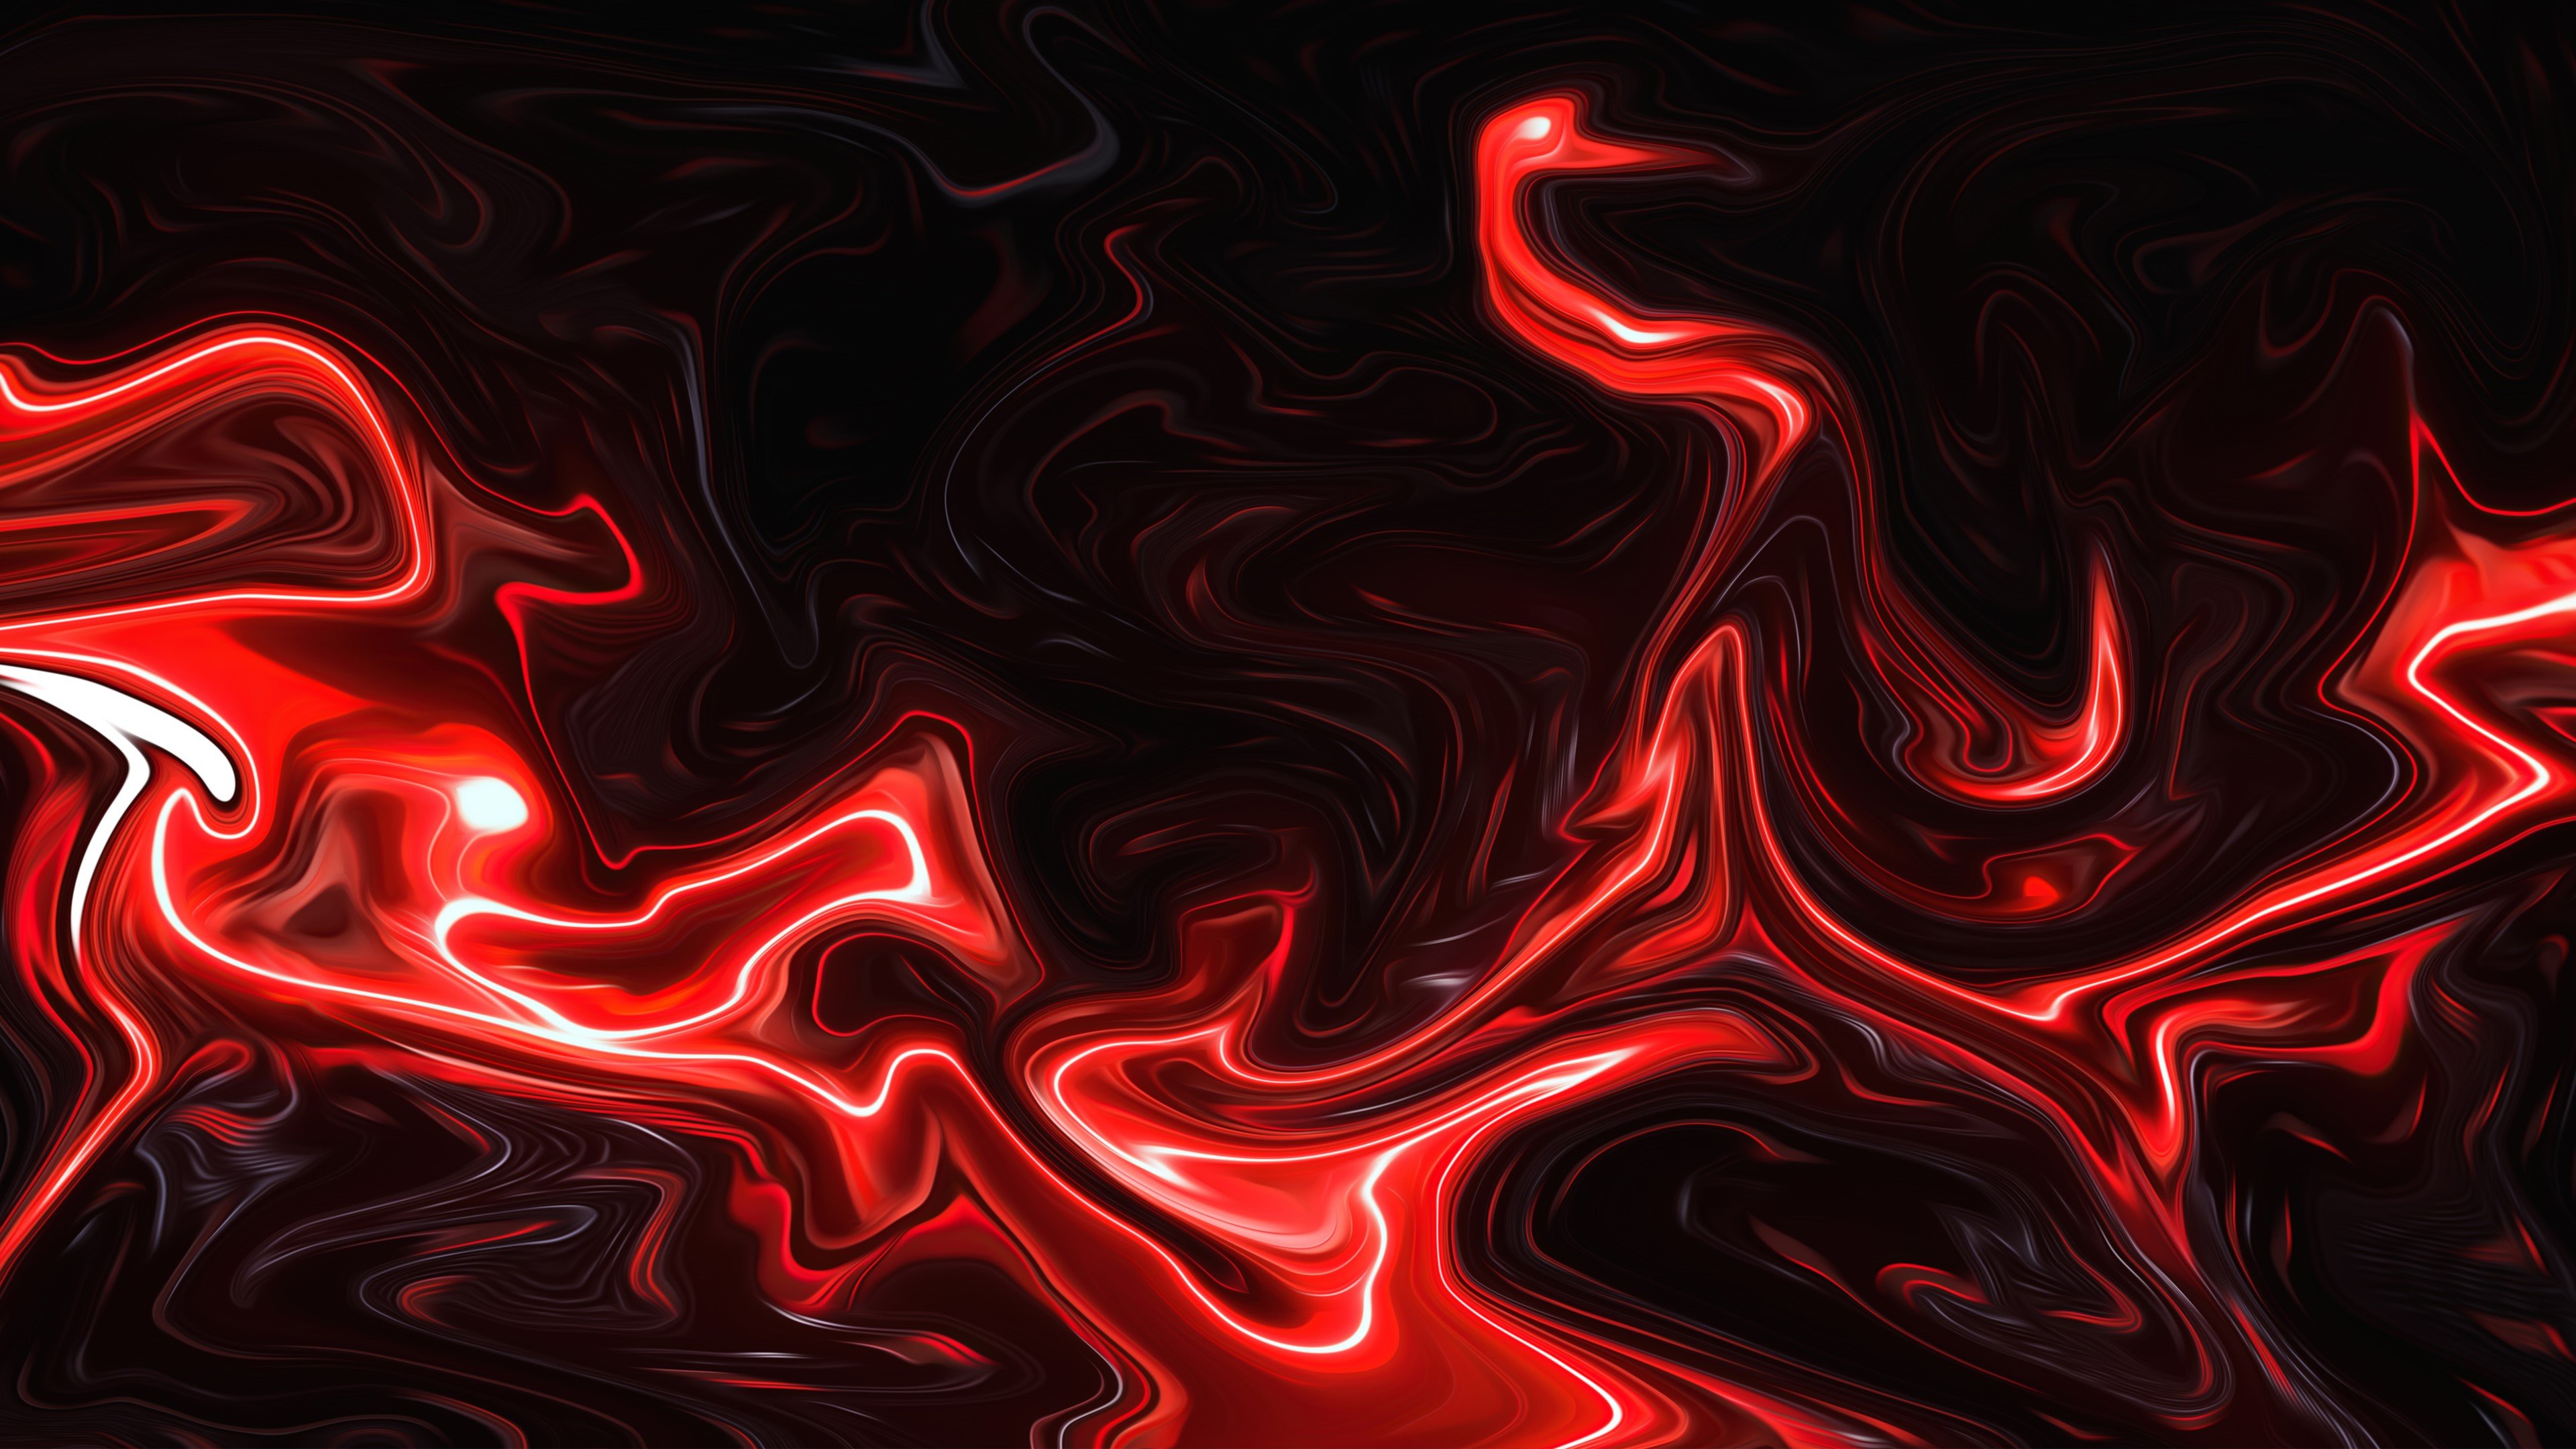 4K, ArtStation, liquid, neon, artwork, fluid, red, abstract Gallery HD Wallpaper